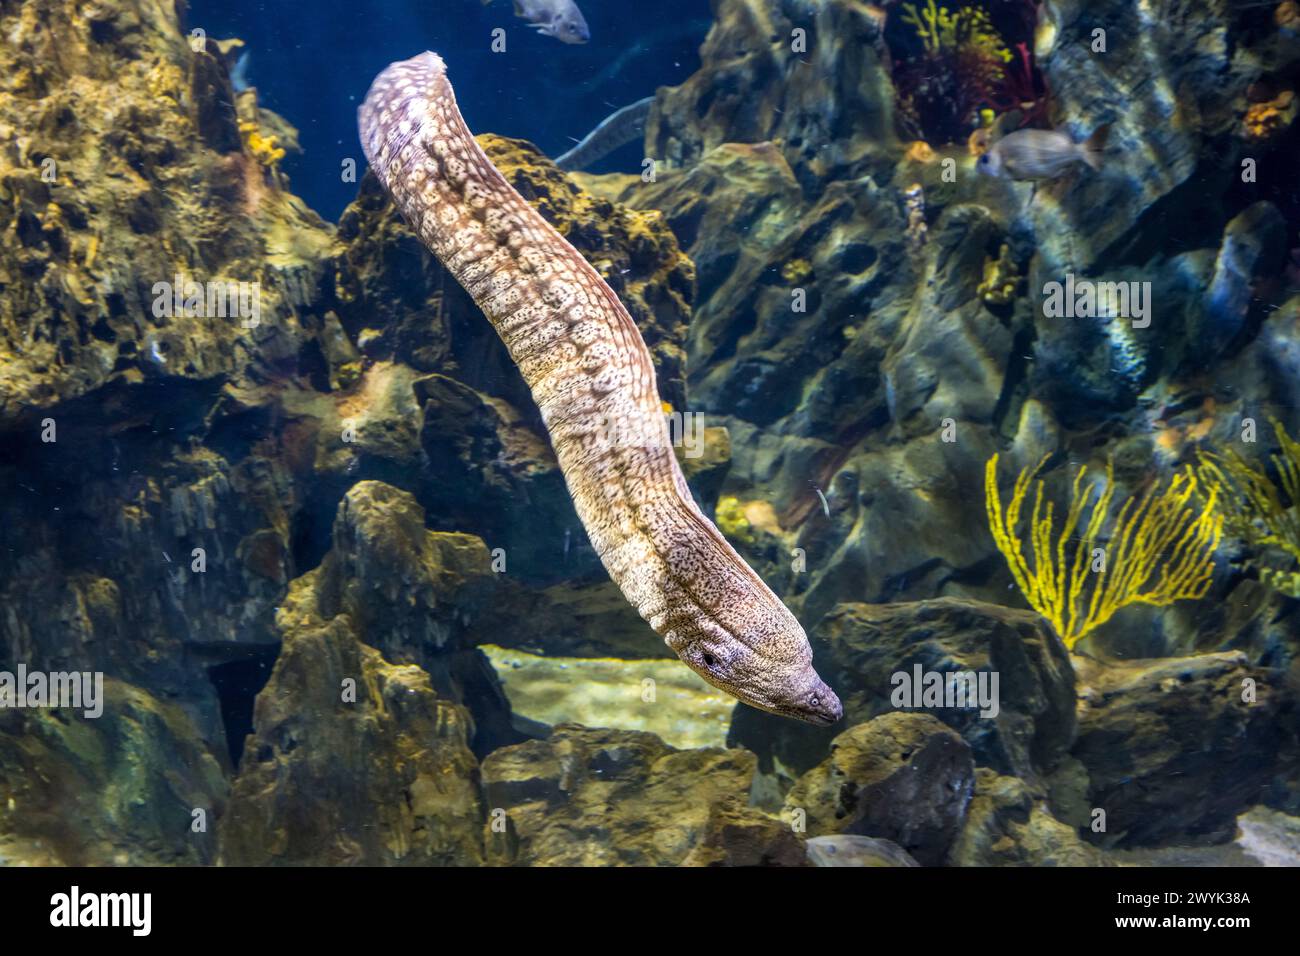 Spain, Catalonia, Barcelona, Port Vell, the aquarium, Common moray eel (Muraena helena) Stock Photo